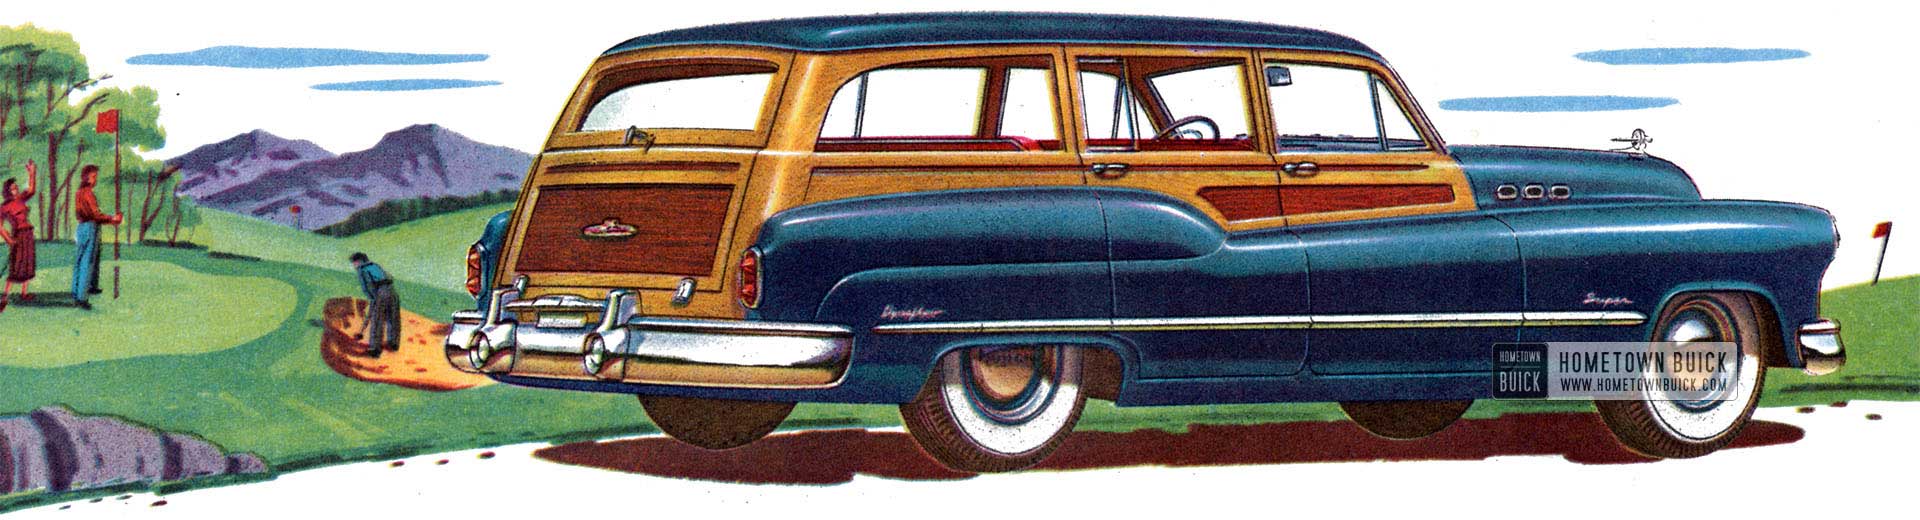 1950 Buick Super Estate Wagon